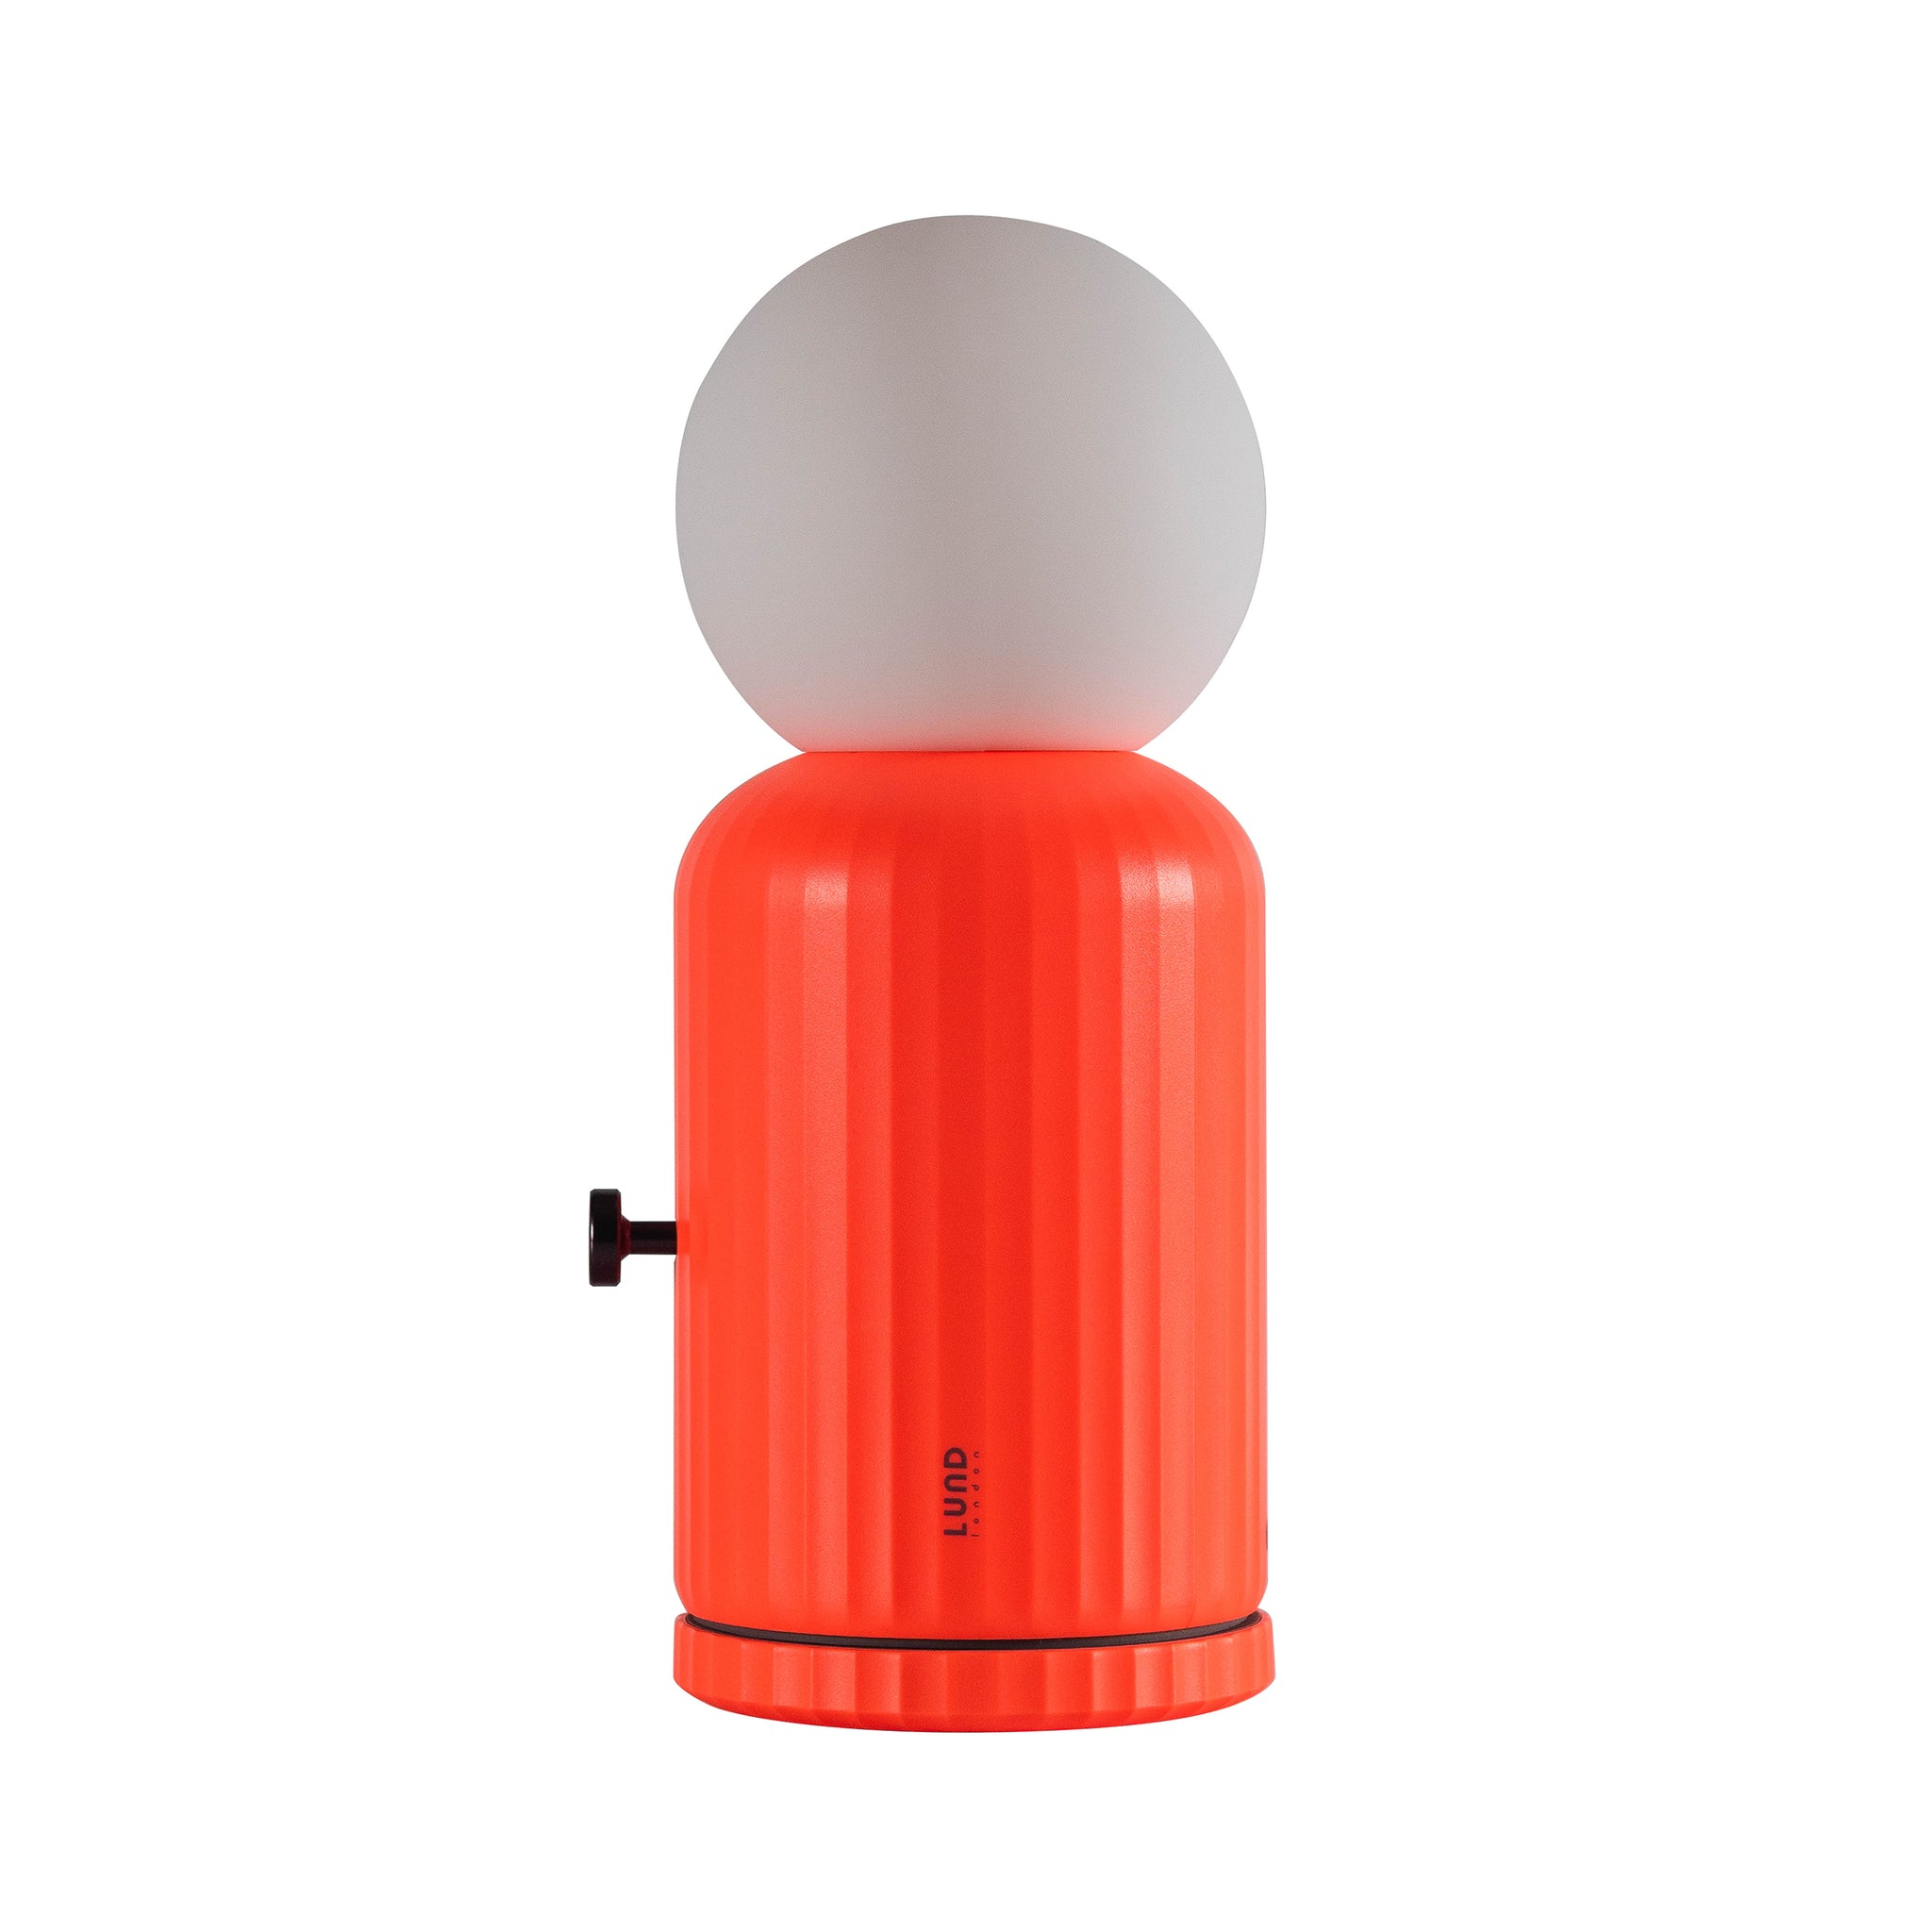 Skittle Oplaadbare Lamp Coral│Lund London│Draadloos│foto witte achtergrond met draaiknop aan zijkant